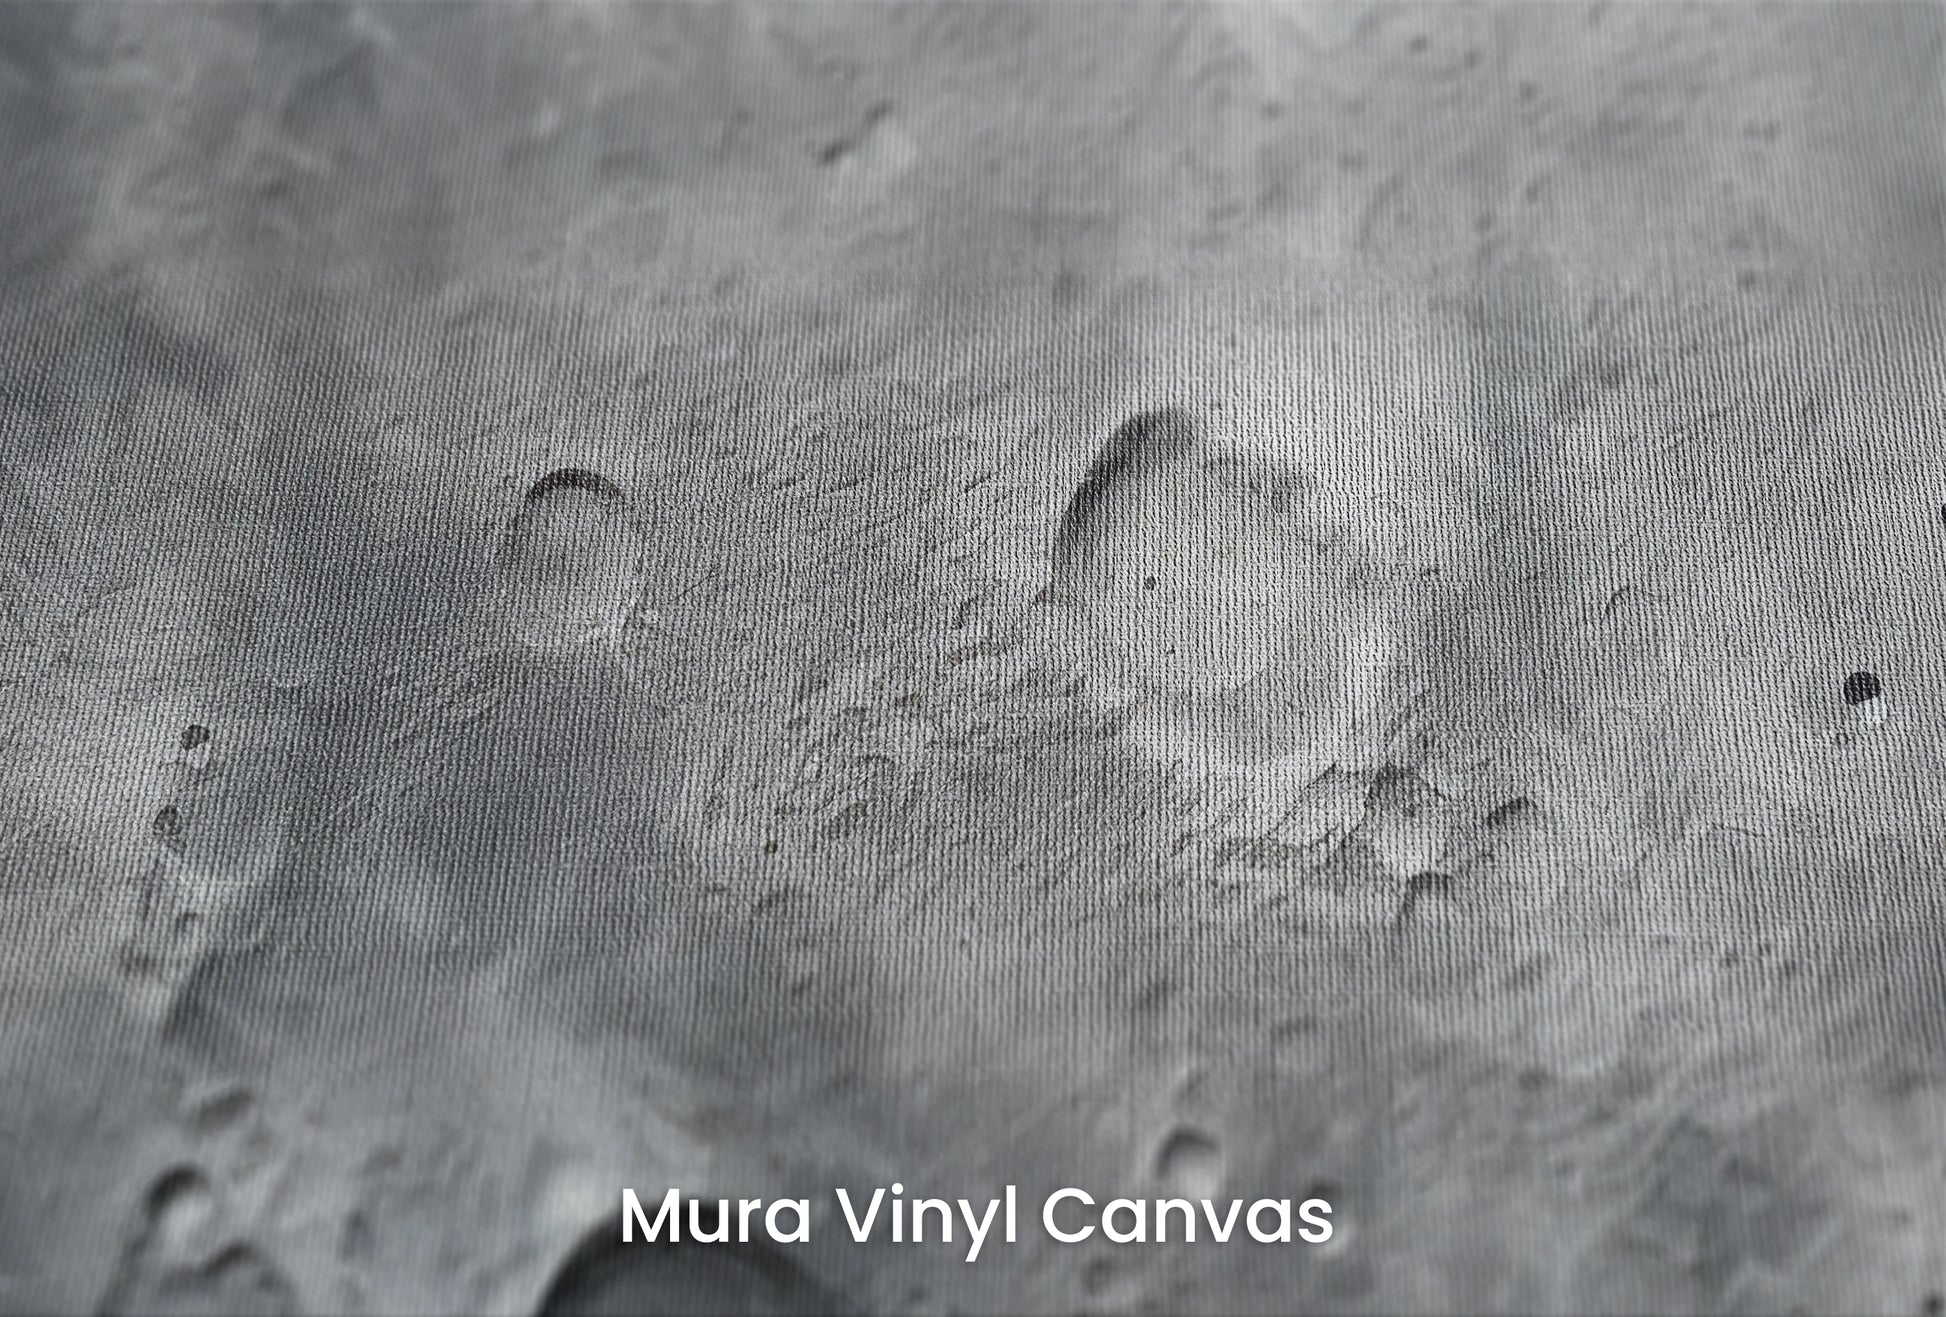 Zbliżenie na artystyczną fototapetę o nazwie Lunar Landscape #2 na podłożu Mura Vinyl Canvas - faktura naturalnego płótna.